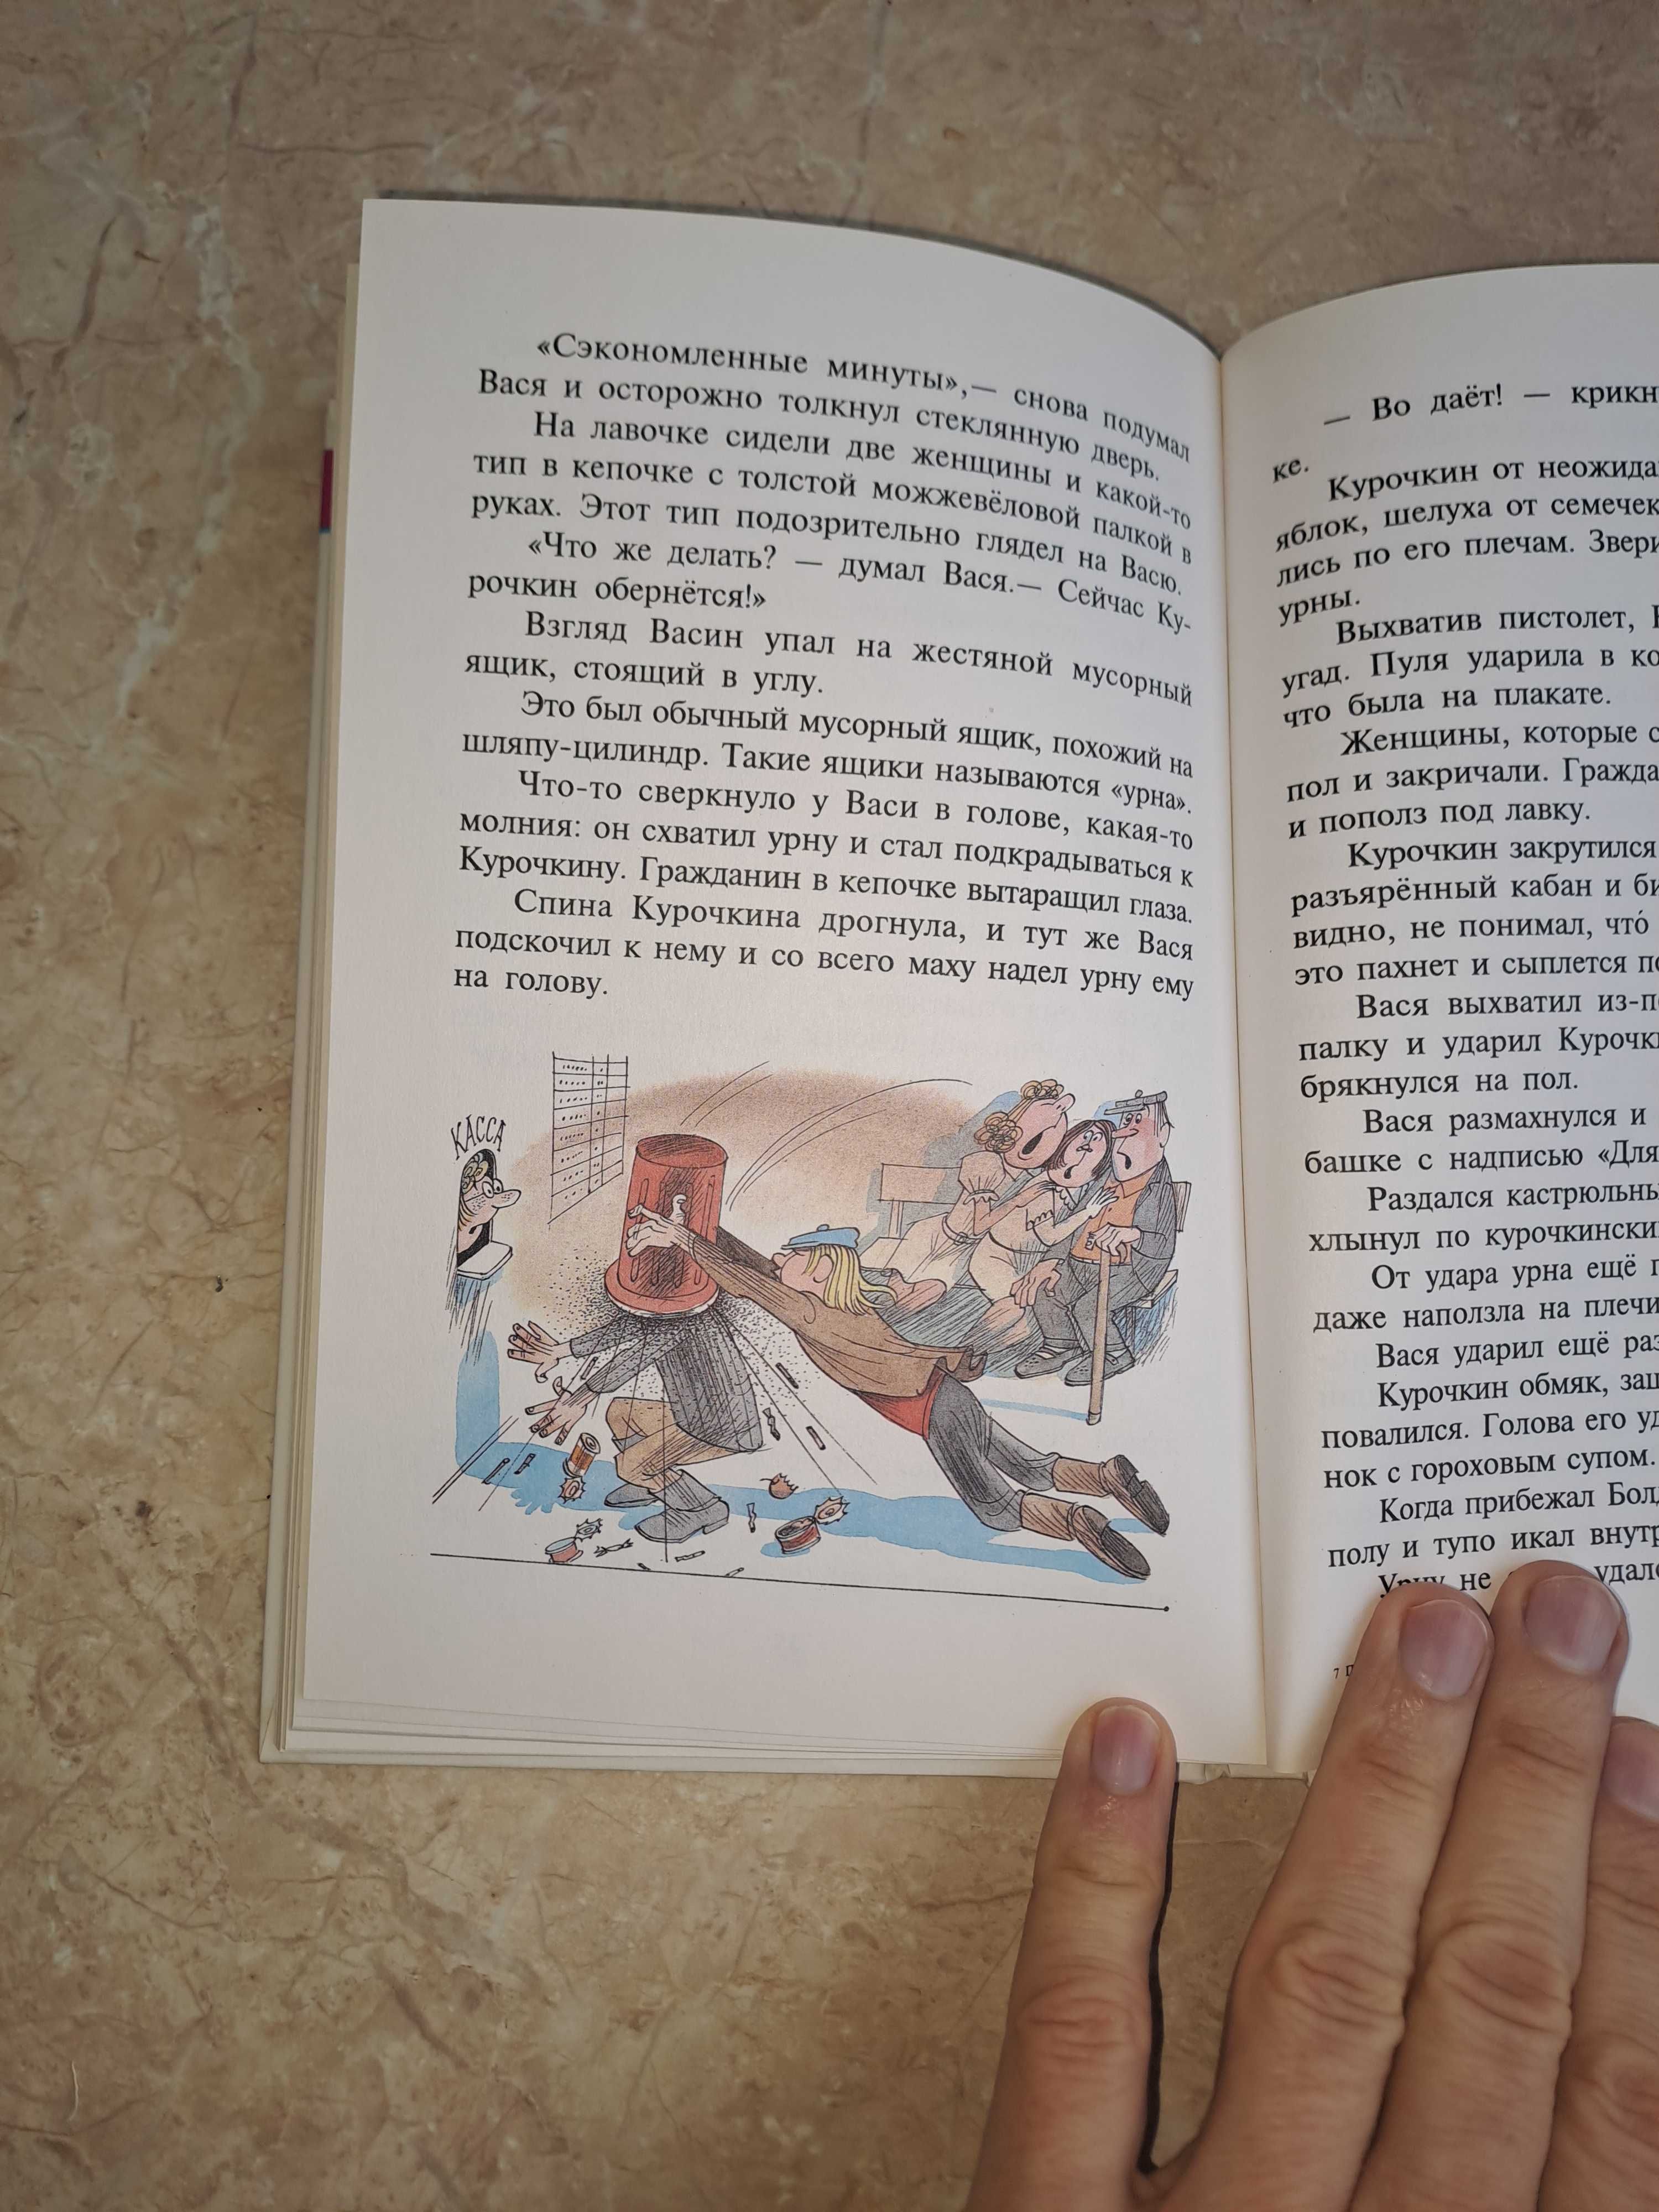 Книга "Приключения Васи Куролесова",  Юрий Коваль